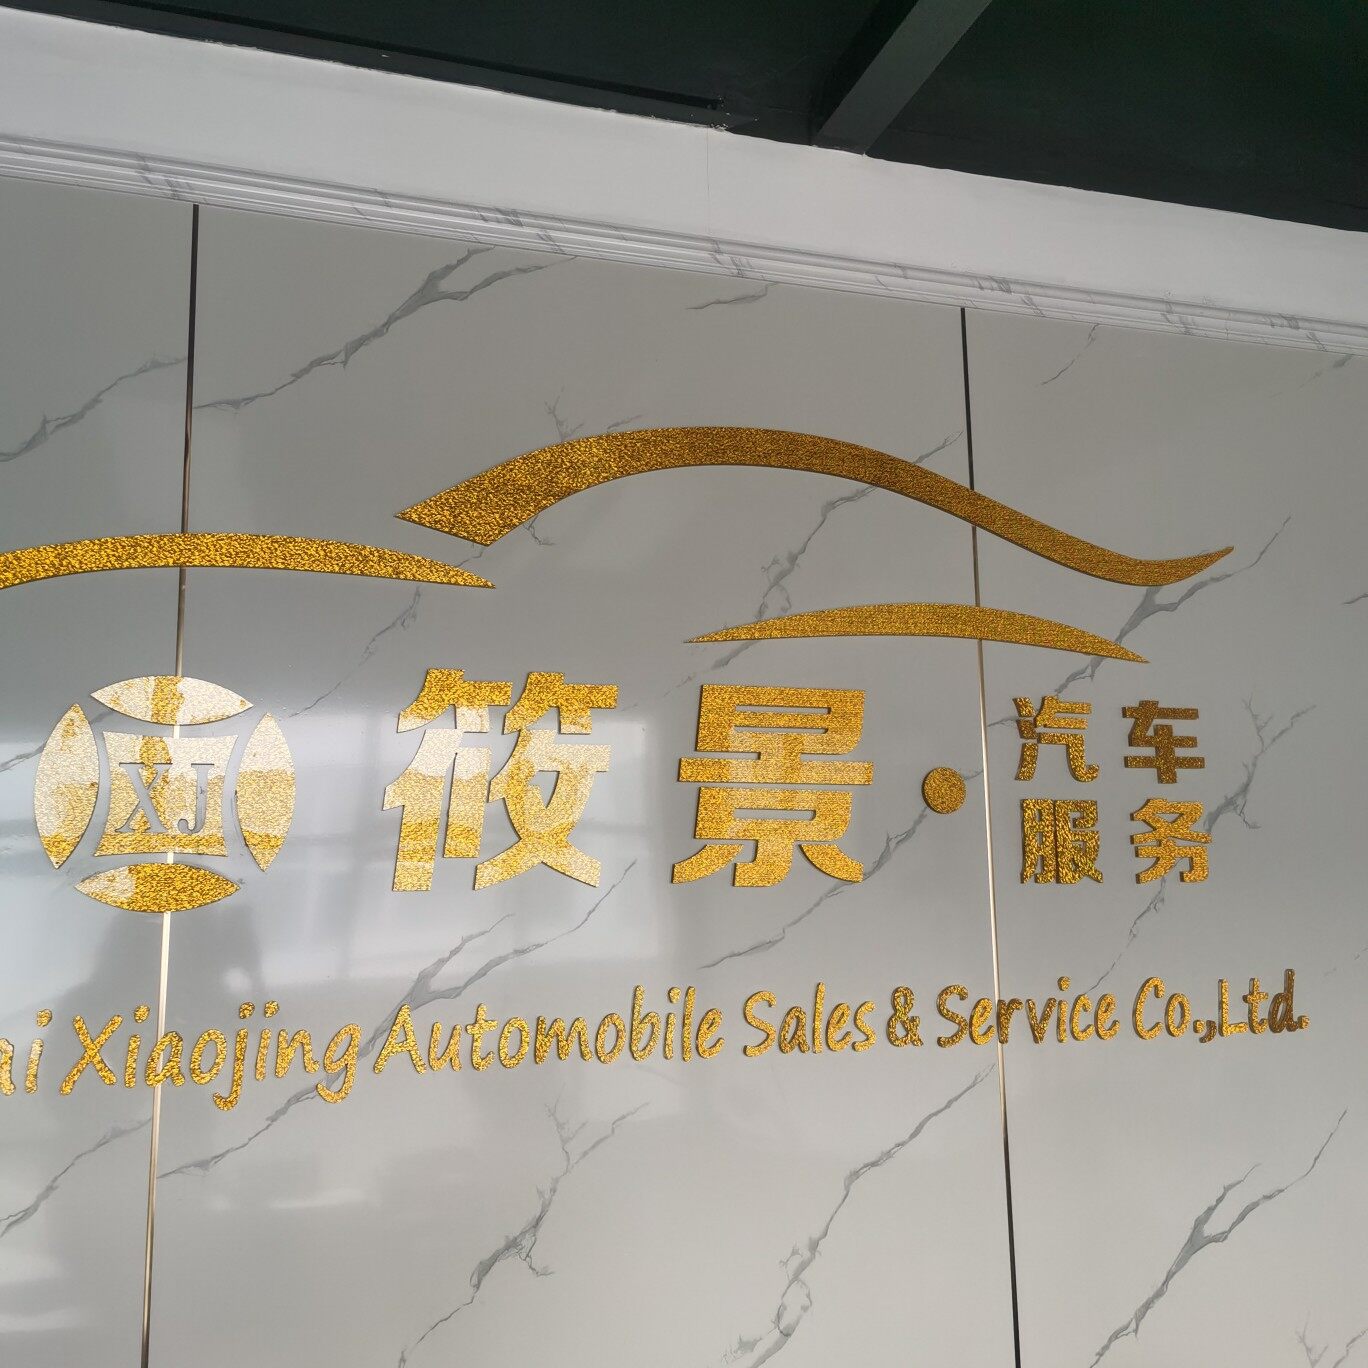 上海筱景汽车销售有限公司